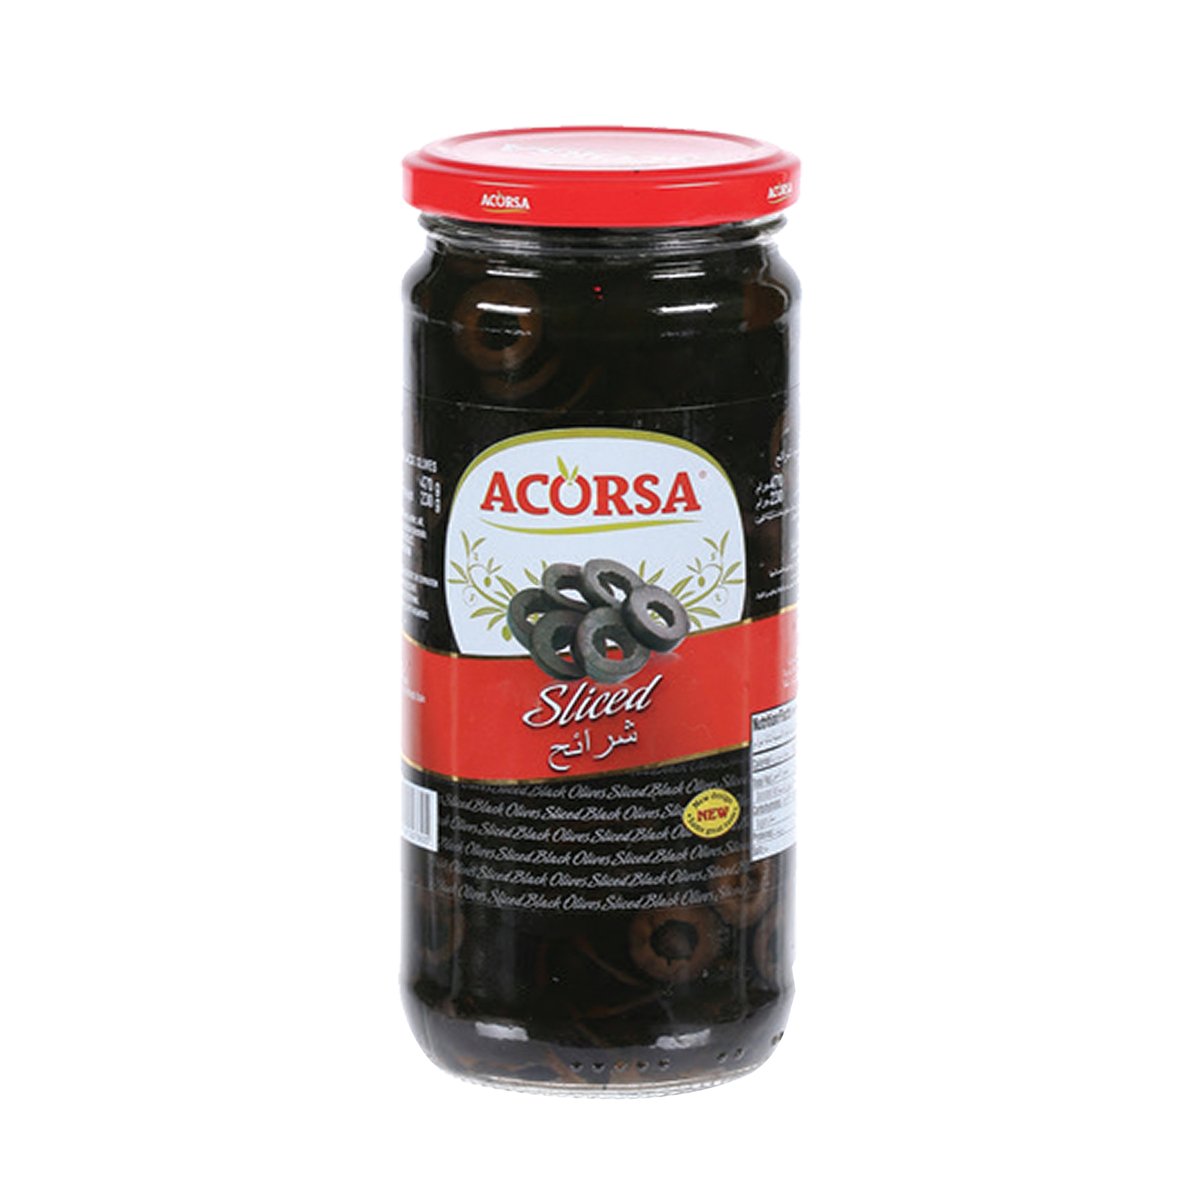 Acorsa Black Sliced Olive Value Pack 2 x 230 g